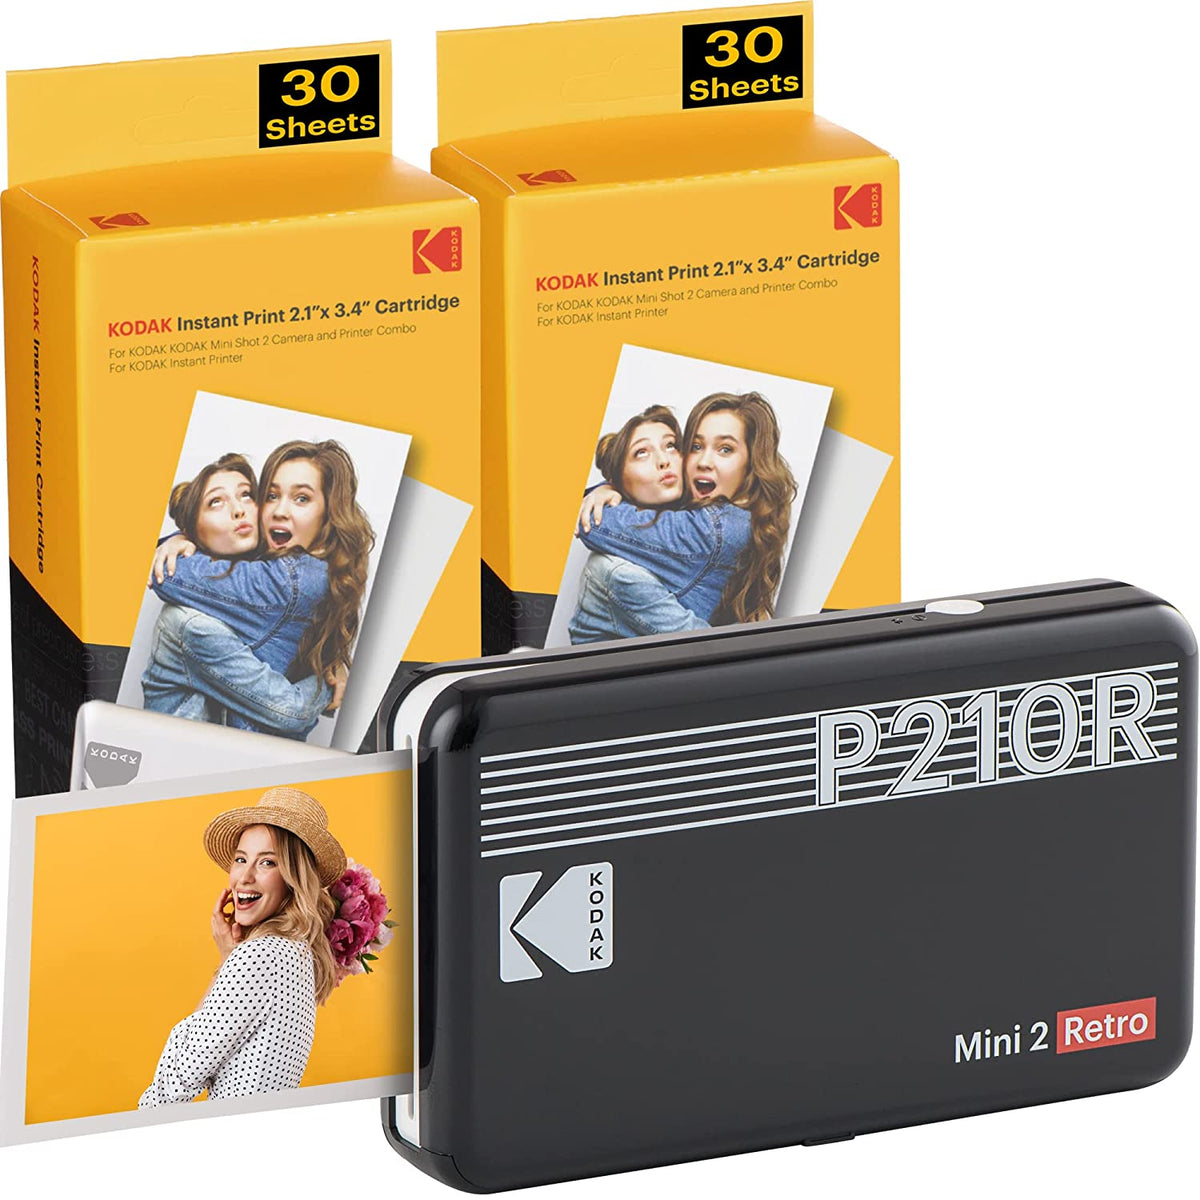 KODAK Mini 2 Retro 2.1 X 3.4 Photo Printer Price in India - Buy